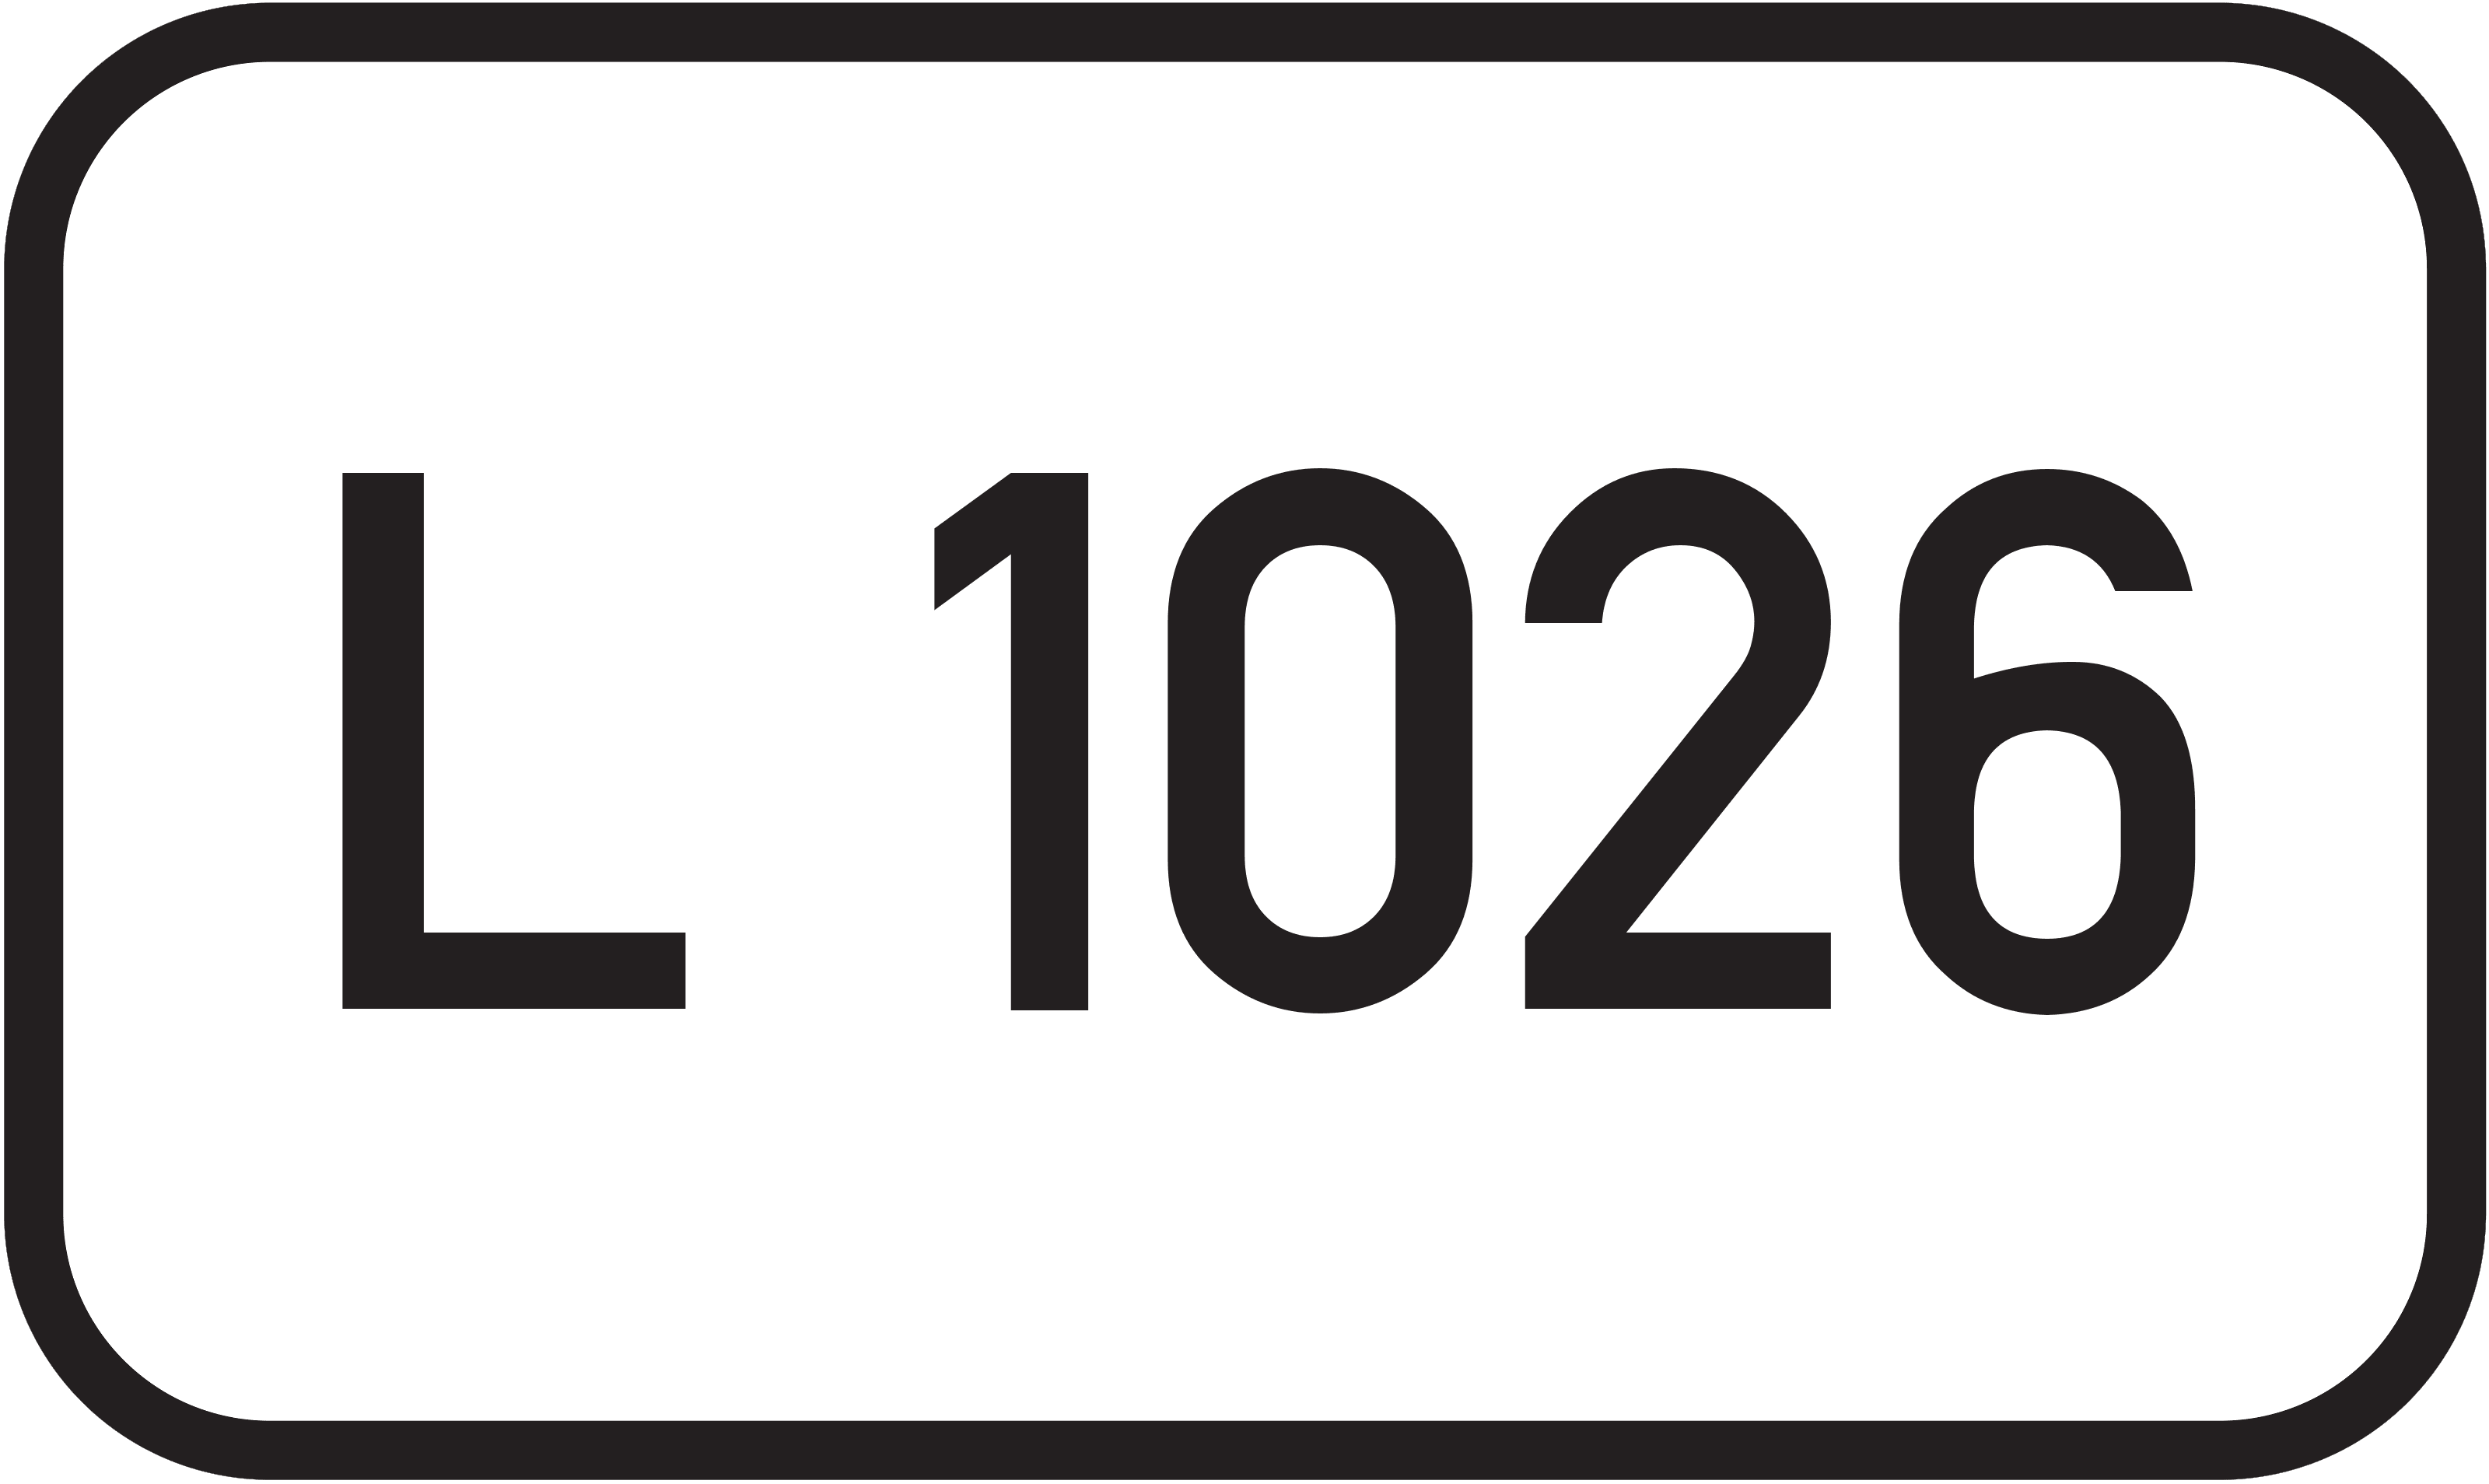 Landesstraße L 1026